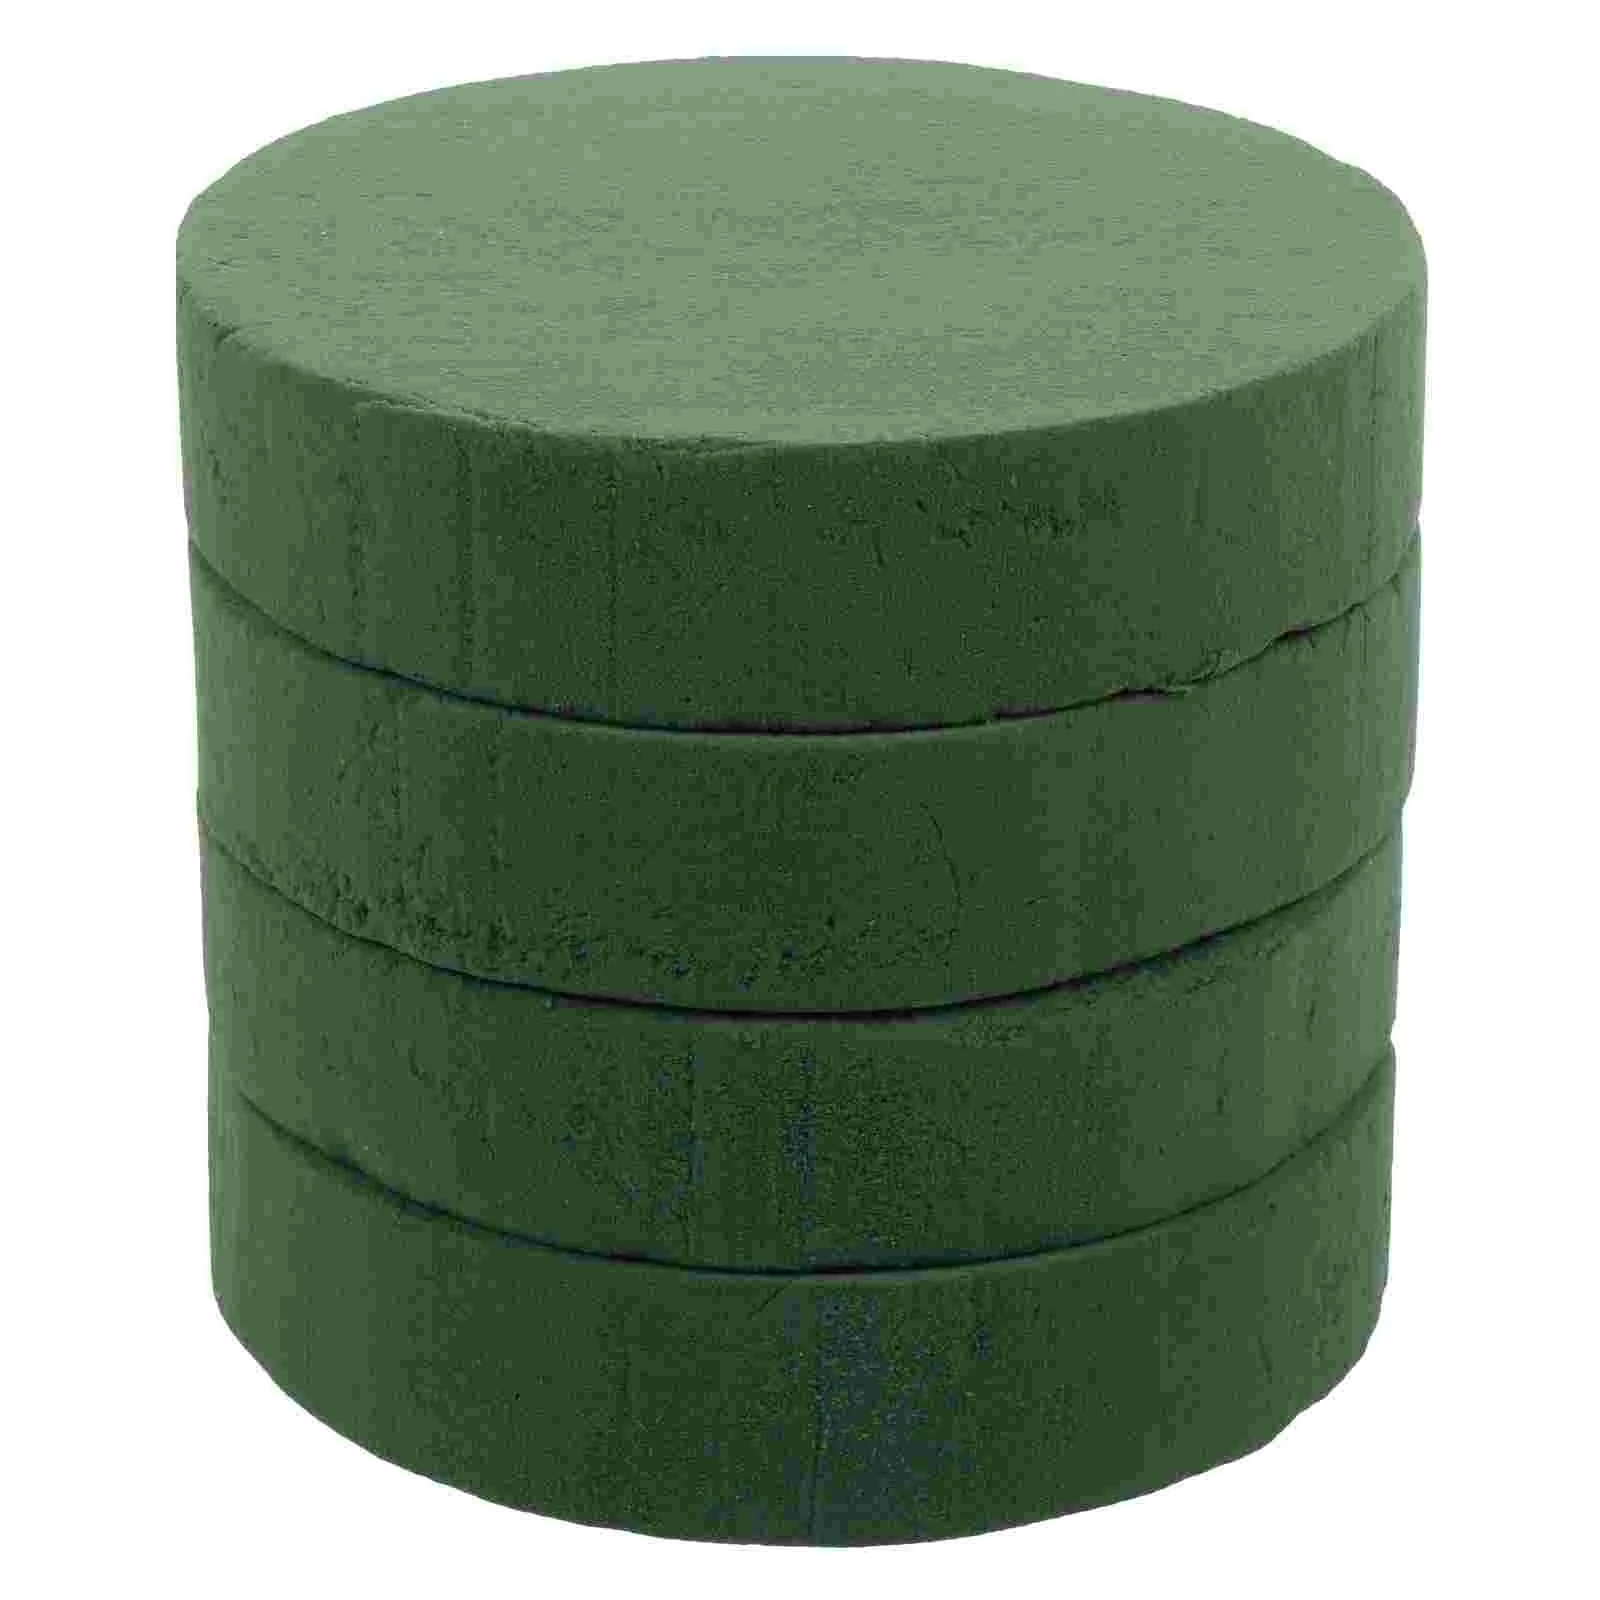 

Цветочные блоки, зеленые кирпичи, блоки для сухого расположения, подставка для стирола, база, грязь, влажные круглые губчатые цветы для форм